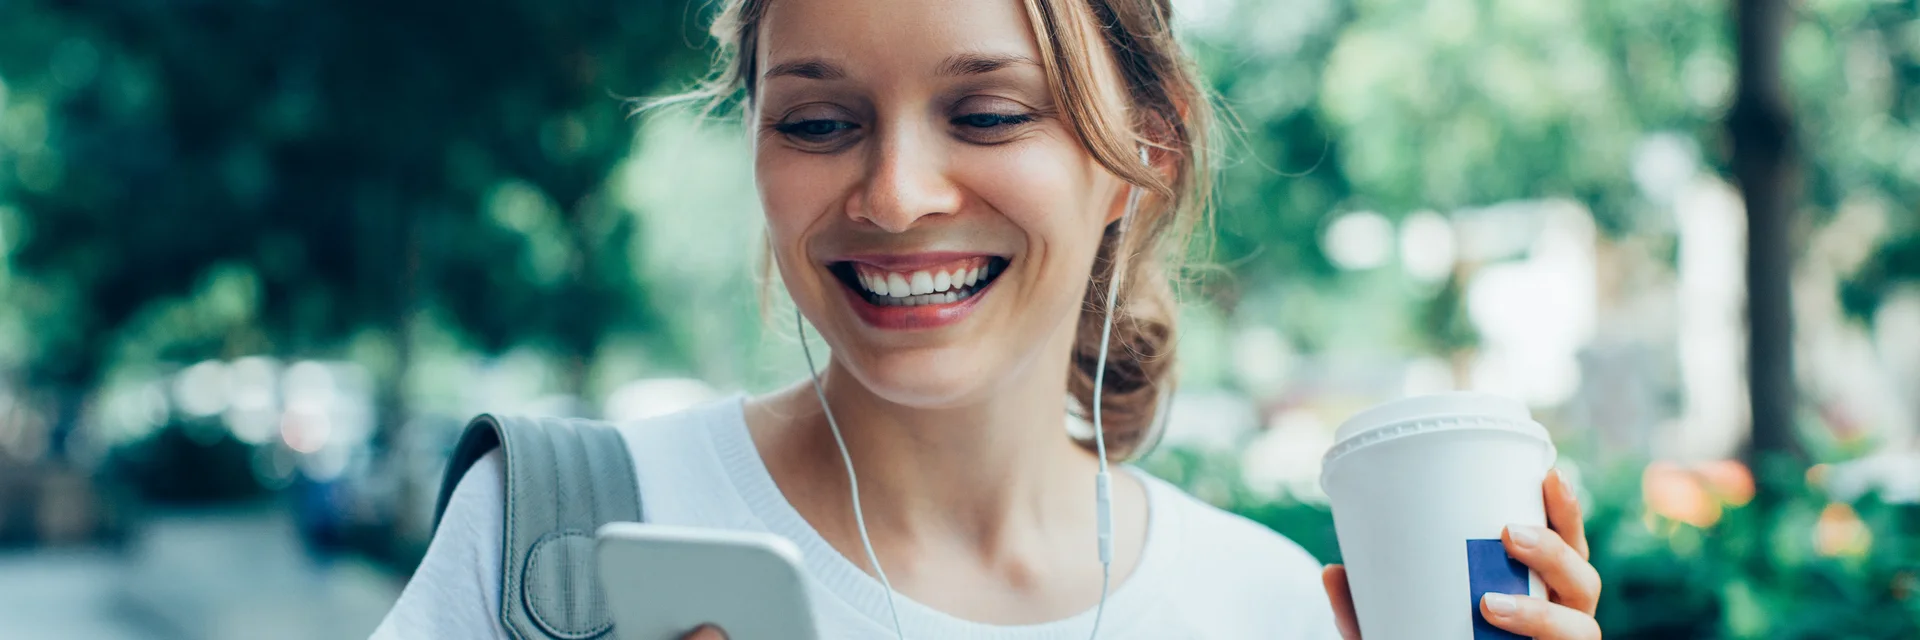 Eine Frau geht durch einen Park und schaut lächelnd auf ihr Handy in der rechten Hand. In der linken Hand hält sie einen Kaffee-Becher